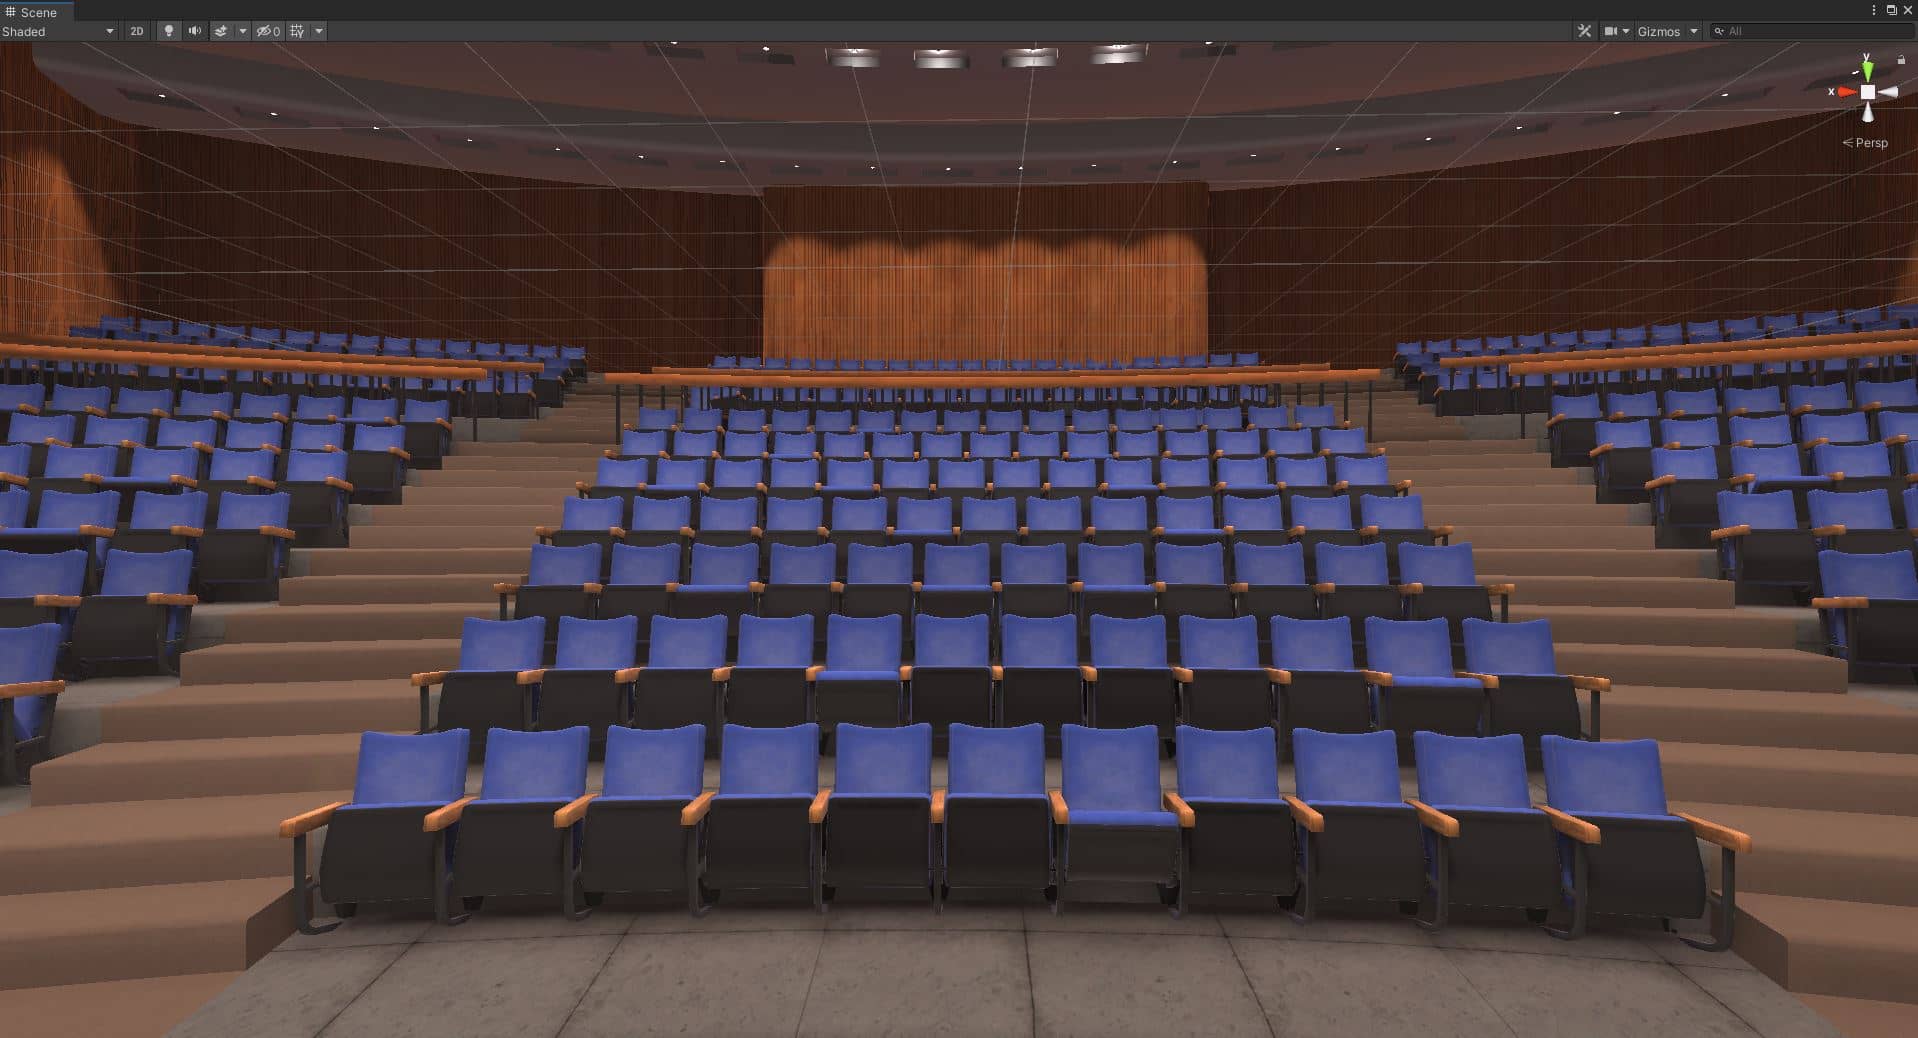 auditorium2